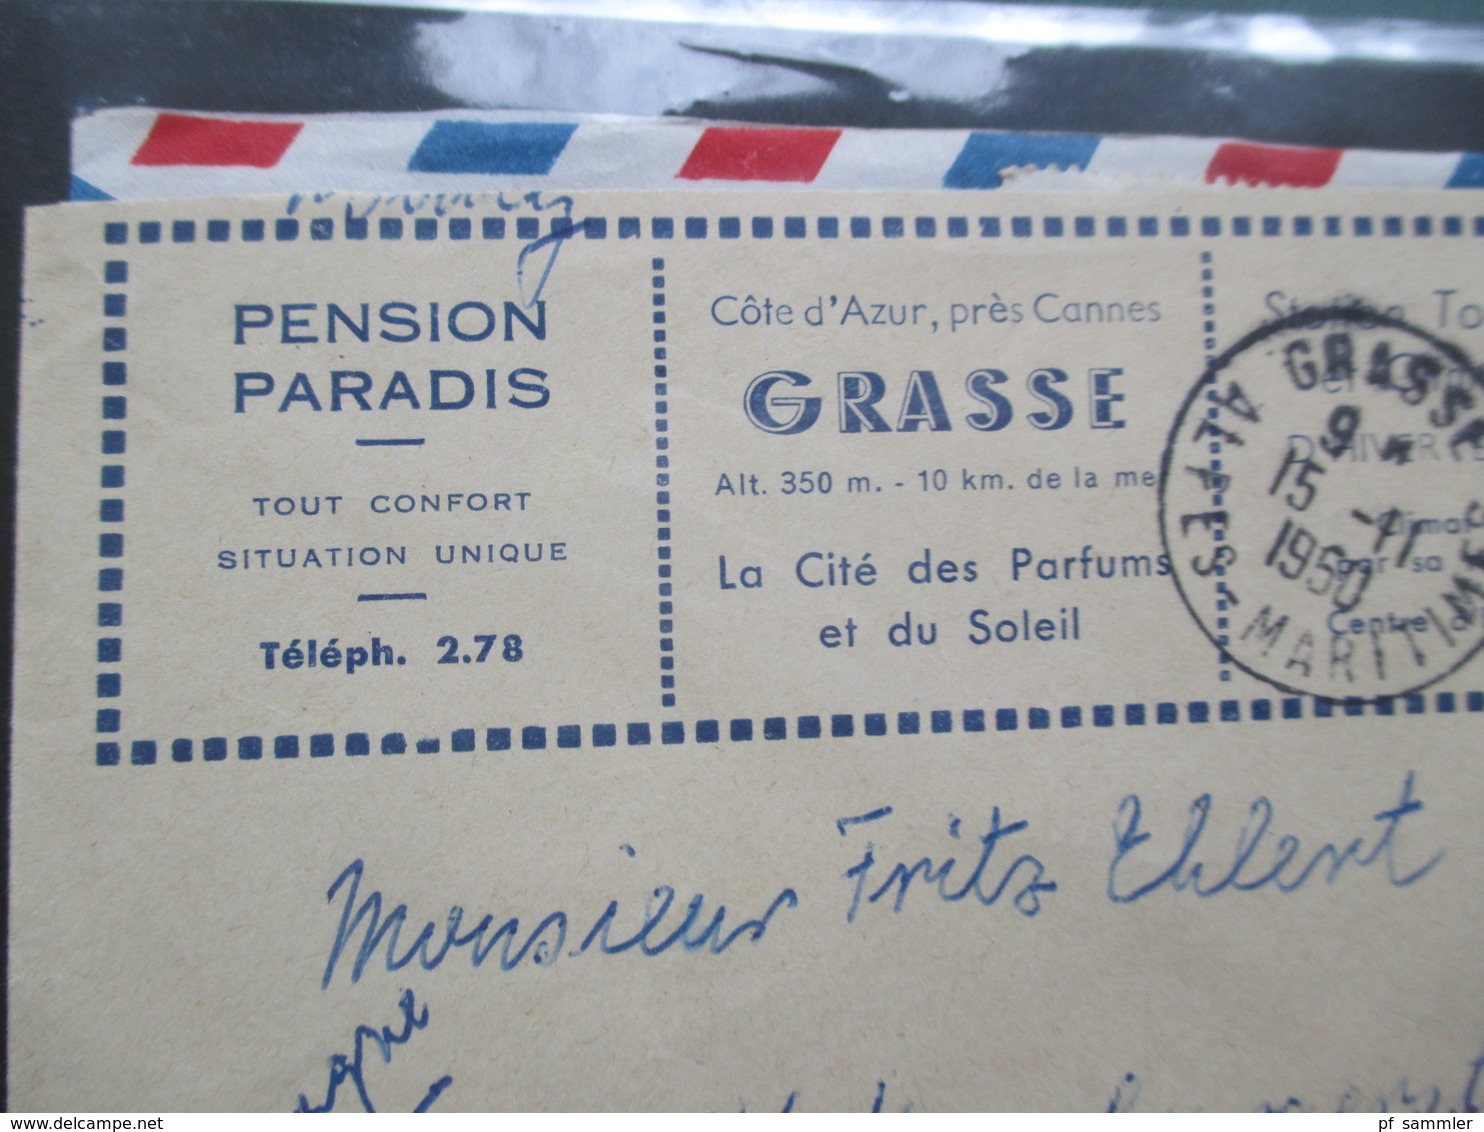 Frankreich Belegealbum 68 Stk. 1948 - 80er einige Einschreiben und auch Luftpost viel Bedarf! viel 1950 / 60er Jahre!